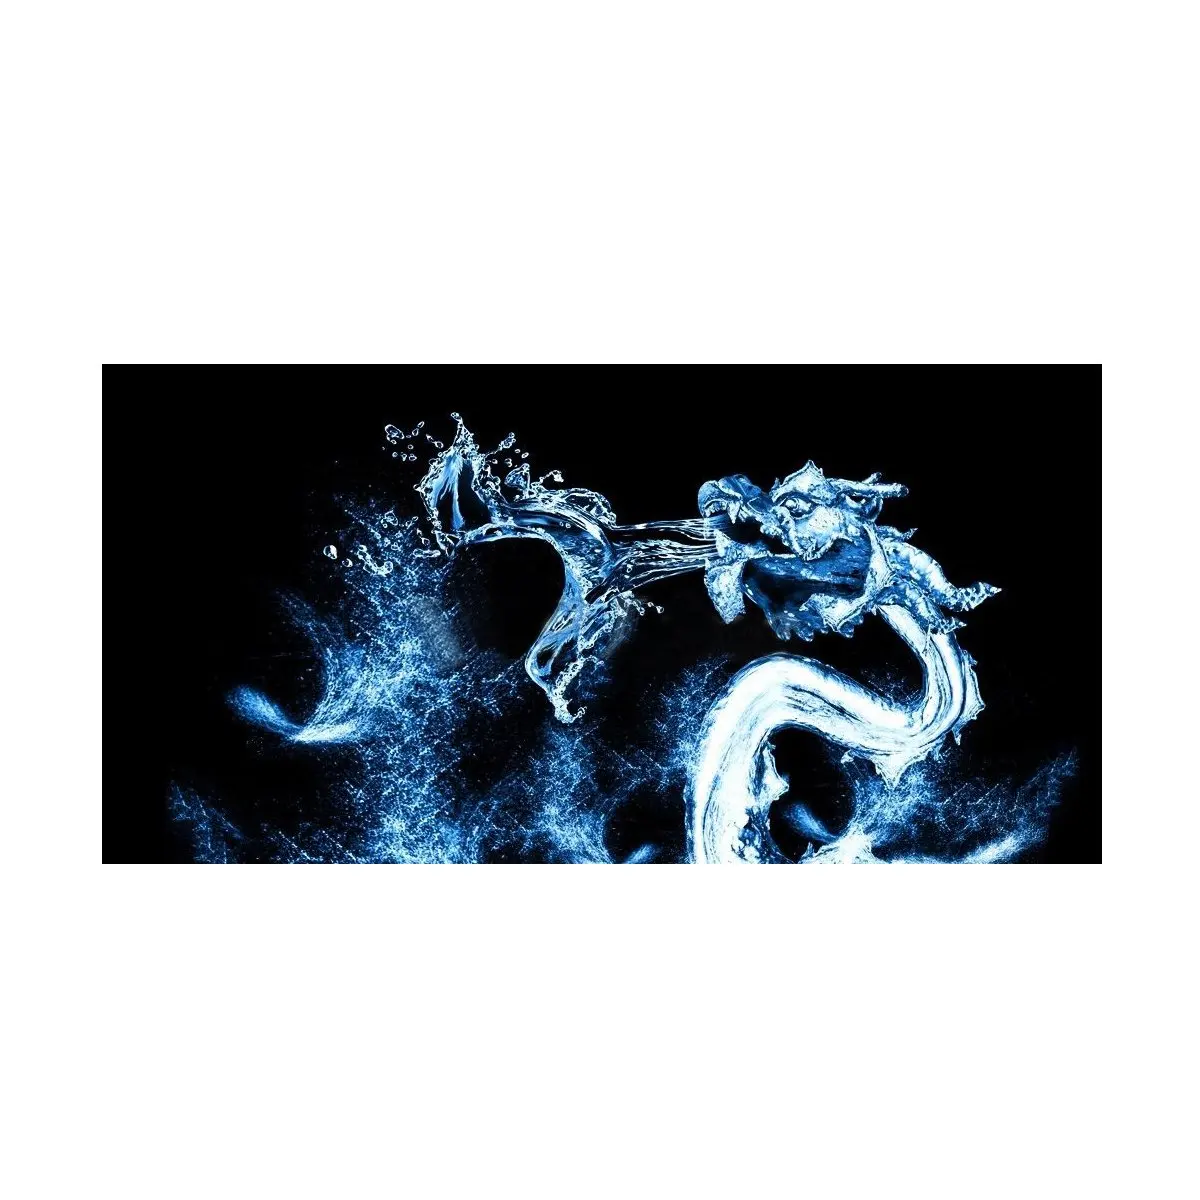 HD воды Дракон аквариум фон плакат задний фон для аквариума Живопись украшения Клей Бумага пейзаж декоративные наклейки - Цвет: Синий